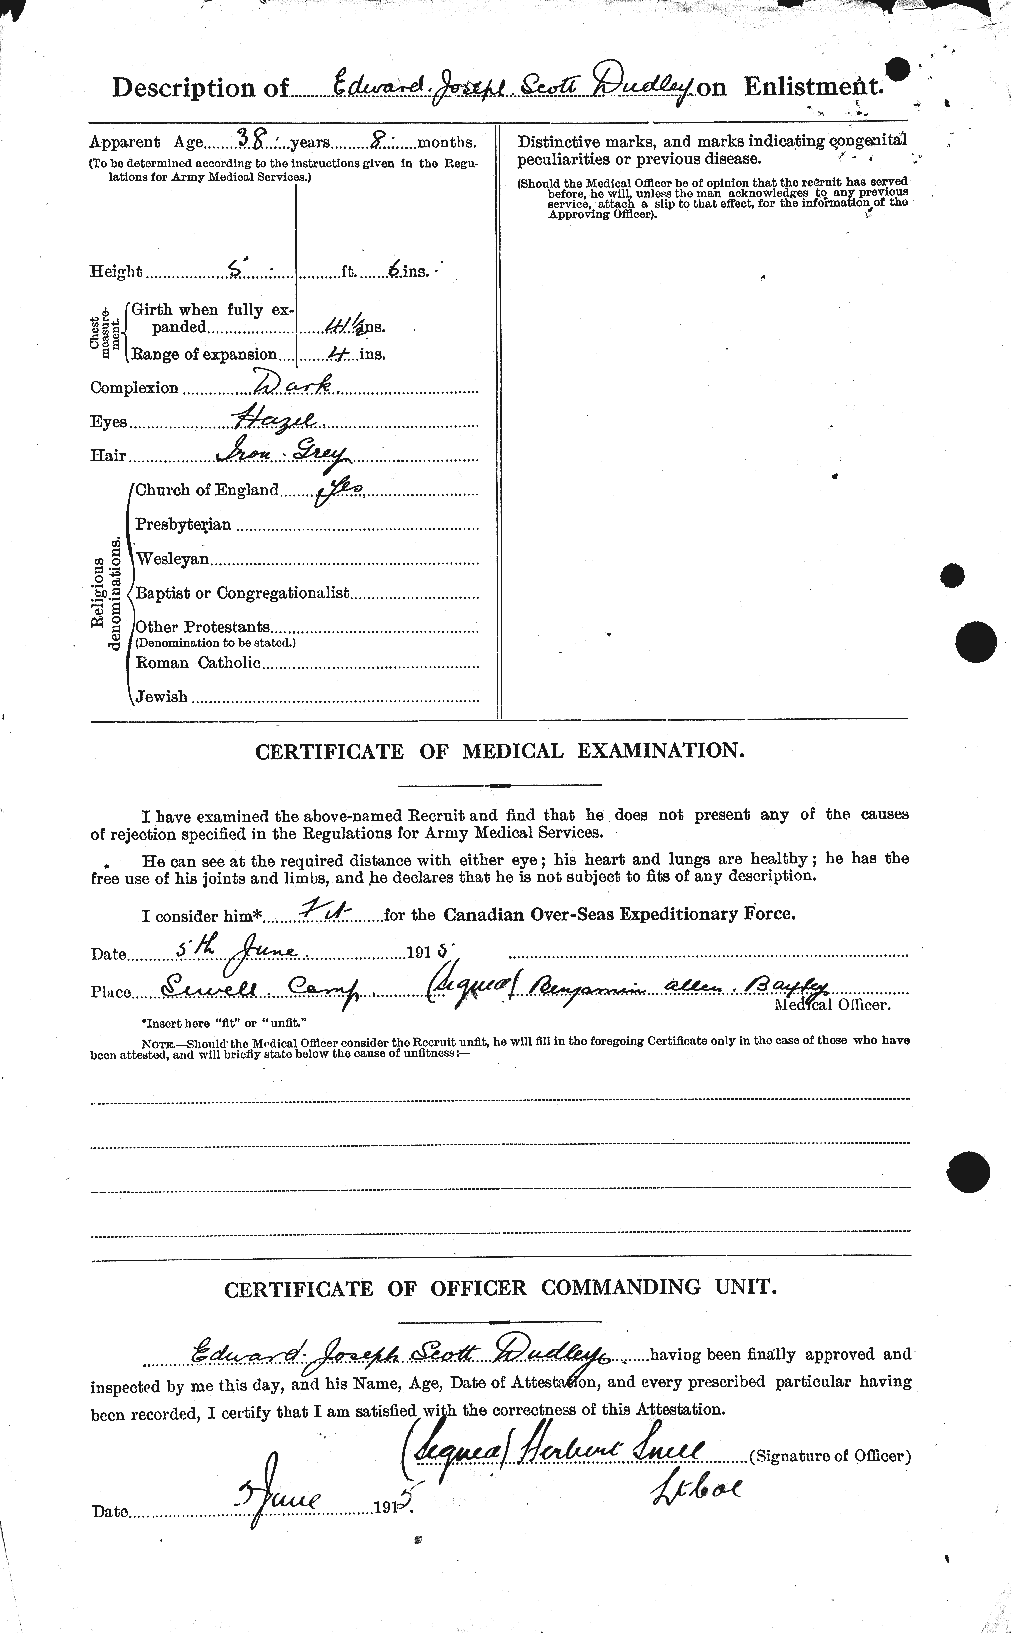 Dossiers du Personnel de la Première Guerre mondiale - CEC 087243b